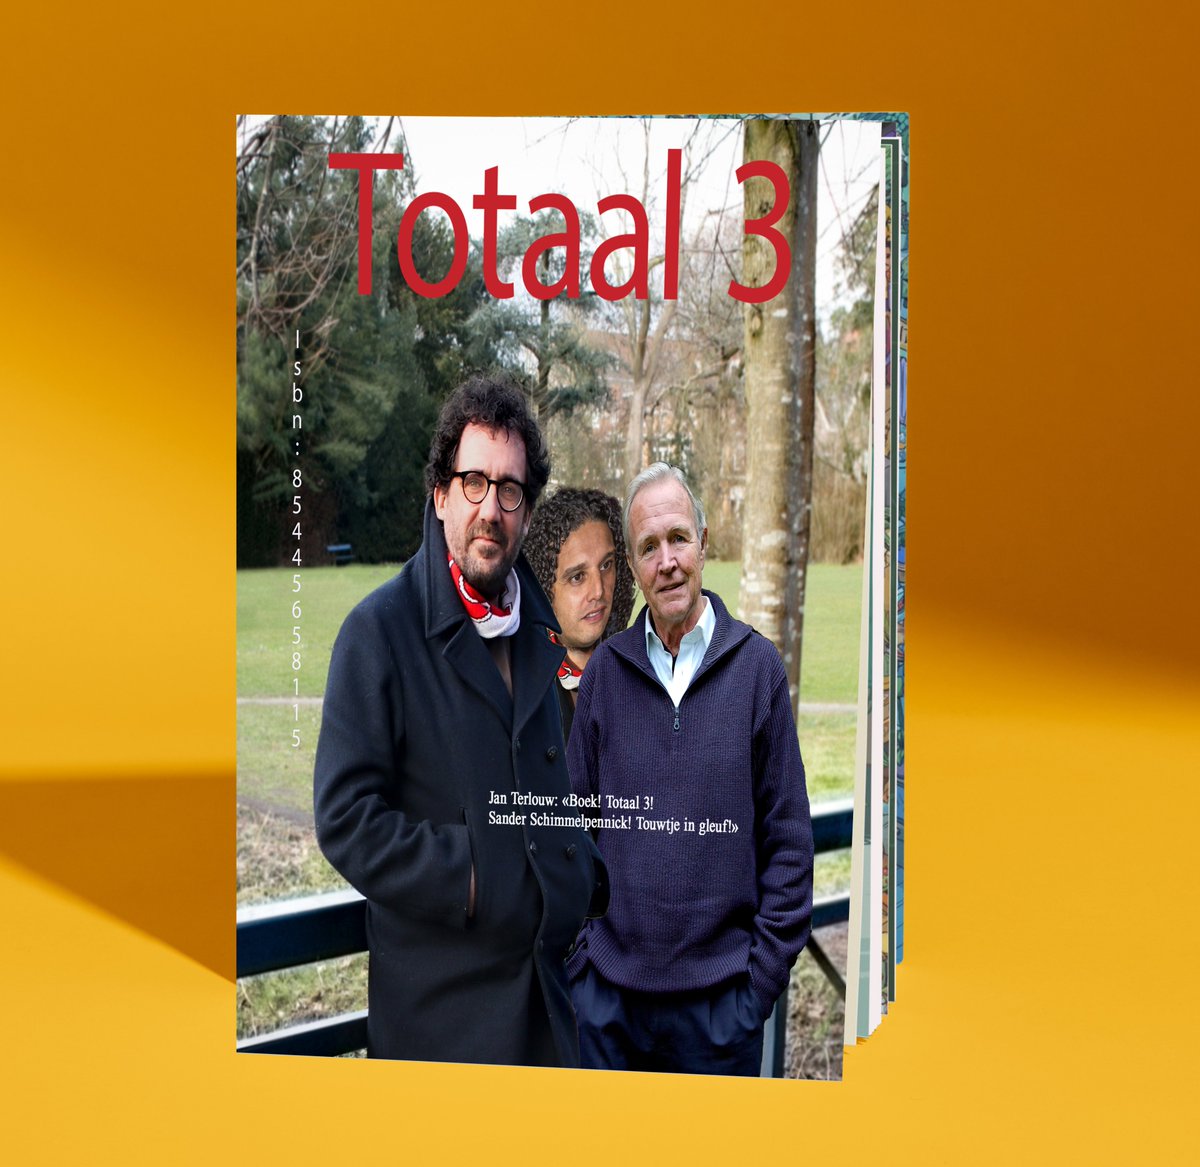 Hi Gijs, fijne vakantie! Ik kom net terug van vakantie en heb bij de gezamelijke BBQ, #Totaal3 gelezen! Wat een prachtig boek en zo'n originele titel ook. Marcel zal wel jaloers zijn, verkoopt erg goed. @gijgro @MvanRoosmalen #Totaal1 #Totaal2 #marcelengijs @weereendag